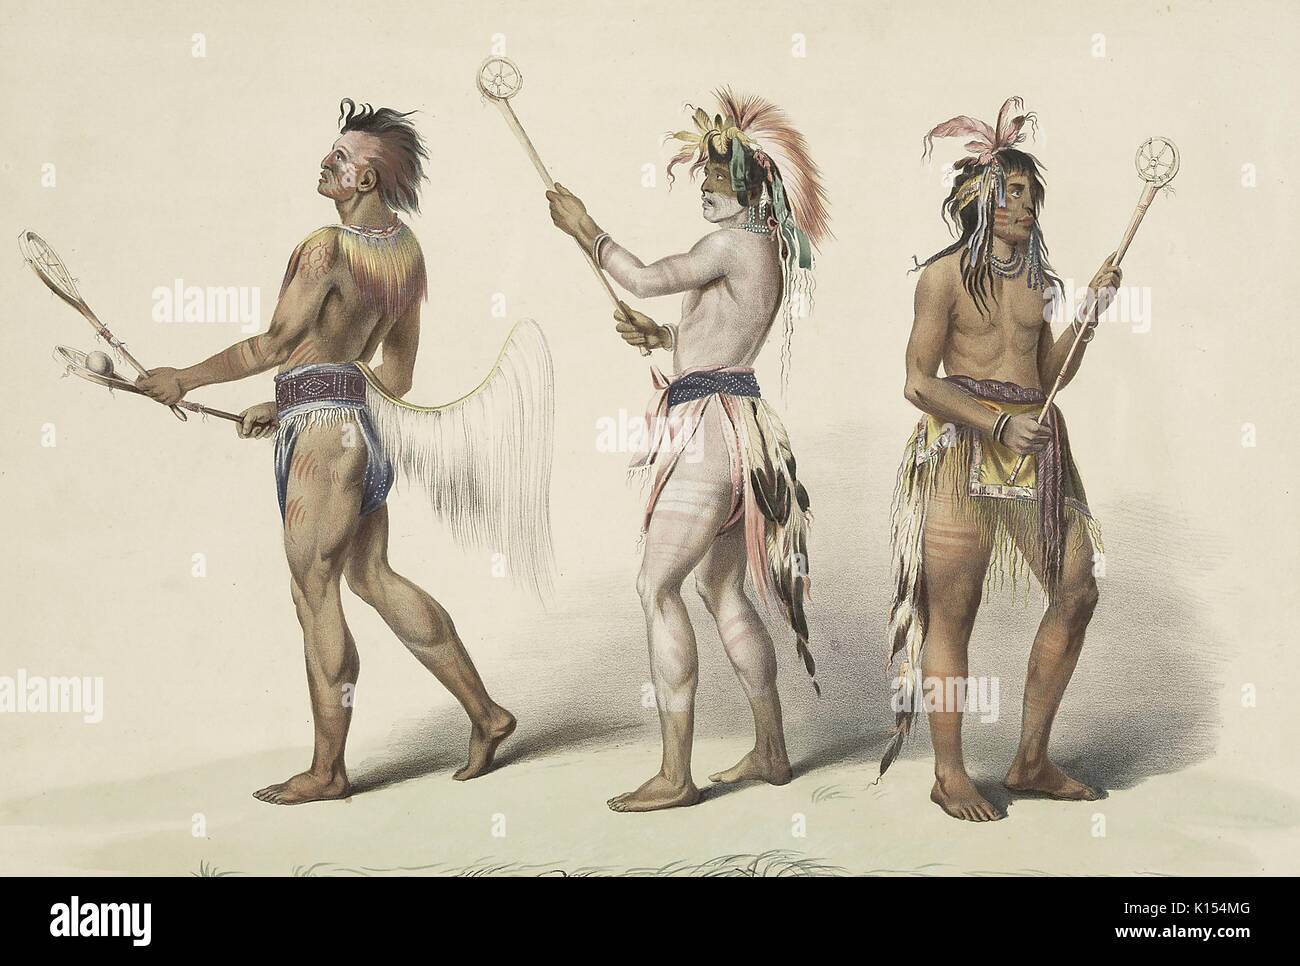 Native Americans Holding primitive lacrosse Sticks und Vorbereitung eines Spiels, Illustration zu spielen, 1888. Von der New York Public Library. Stockfoto